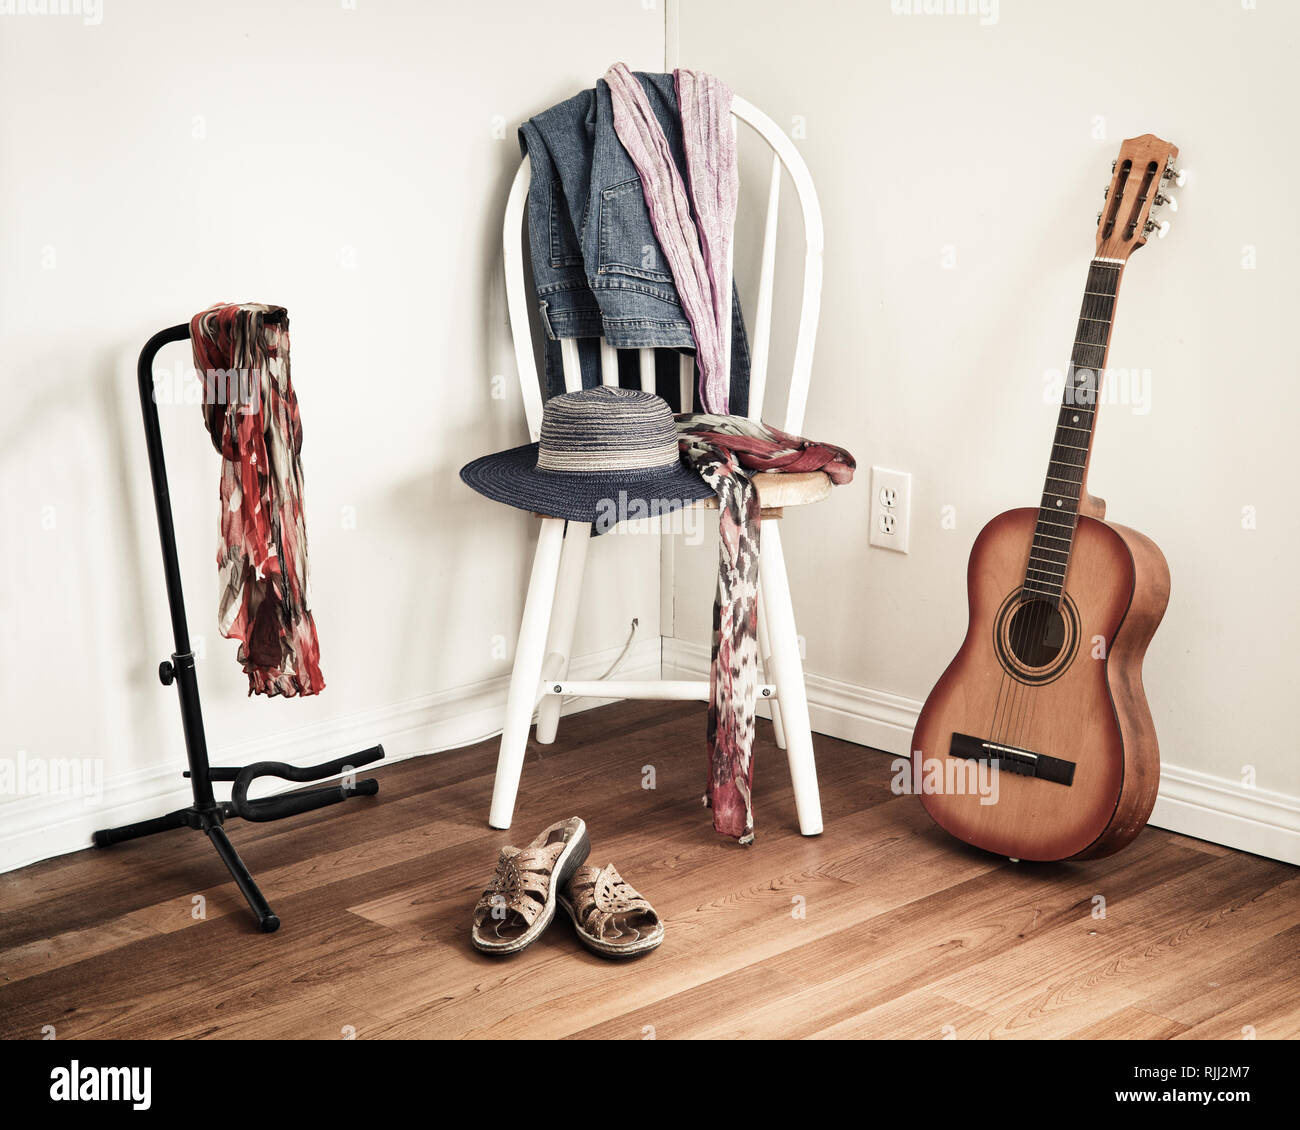 Des vêtements décontractés pour femmes sur chaise dans cadre domestique avec guitare acoustique leaning against wall. Banque D'Images